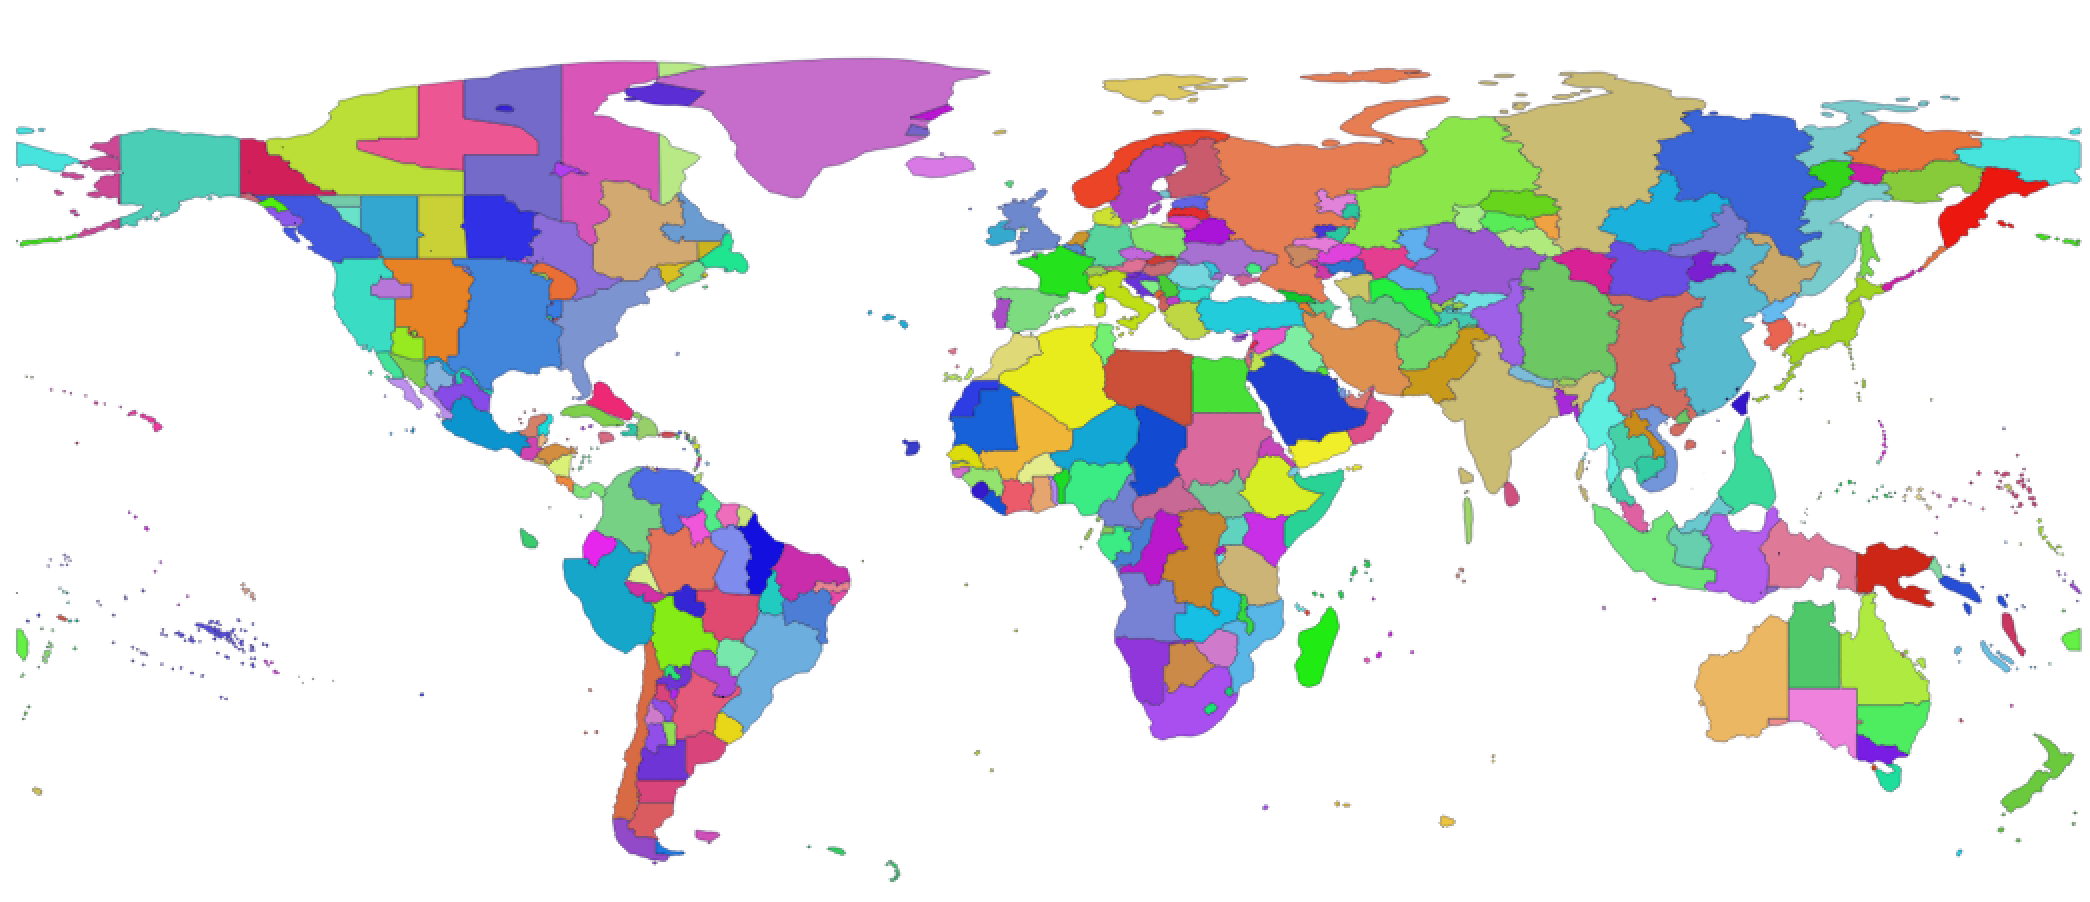 Carte du monde avec le découpage de toutes les zones tzdata existantes